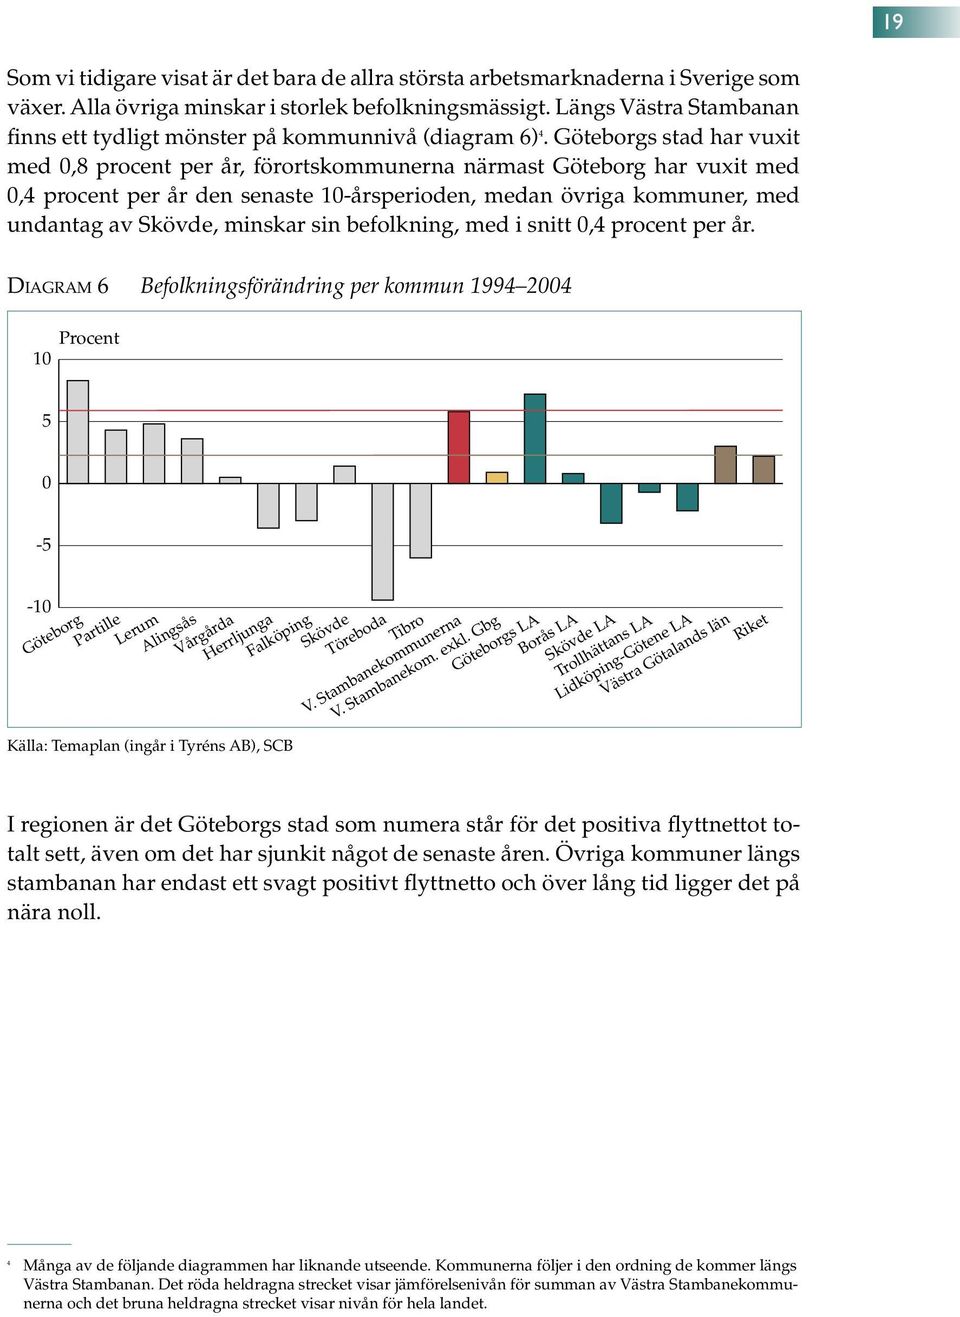 Göteborgs stad har vuxit med,8 procent per år, förortskommunerna närmast Göteborg har vuxit med,4 procent per år den senaste 1-årsperioden, medan övriga kommuner, med undantag av Skövde, minskar sin